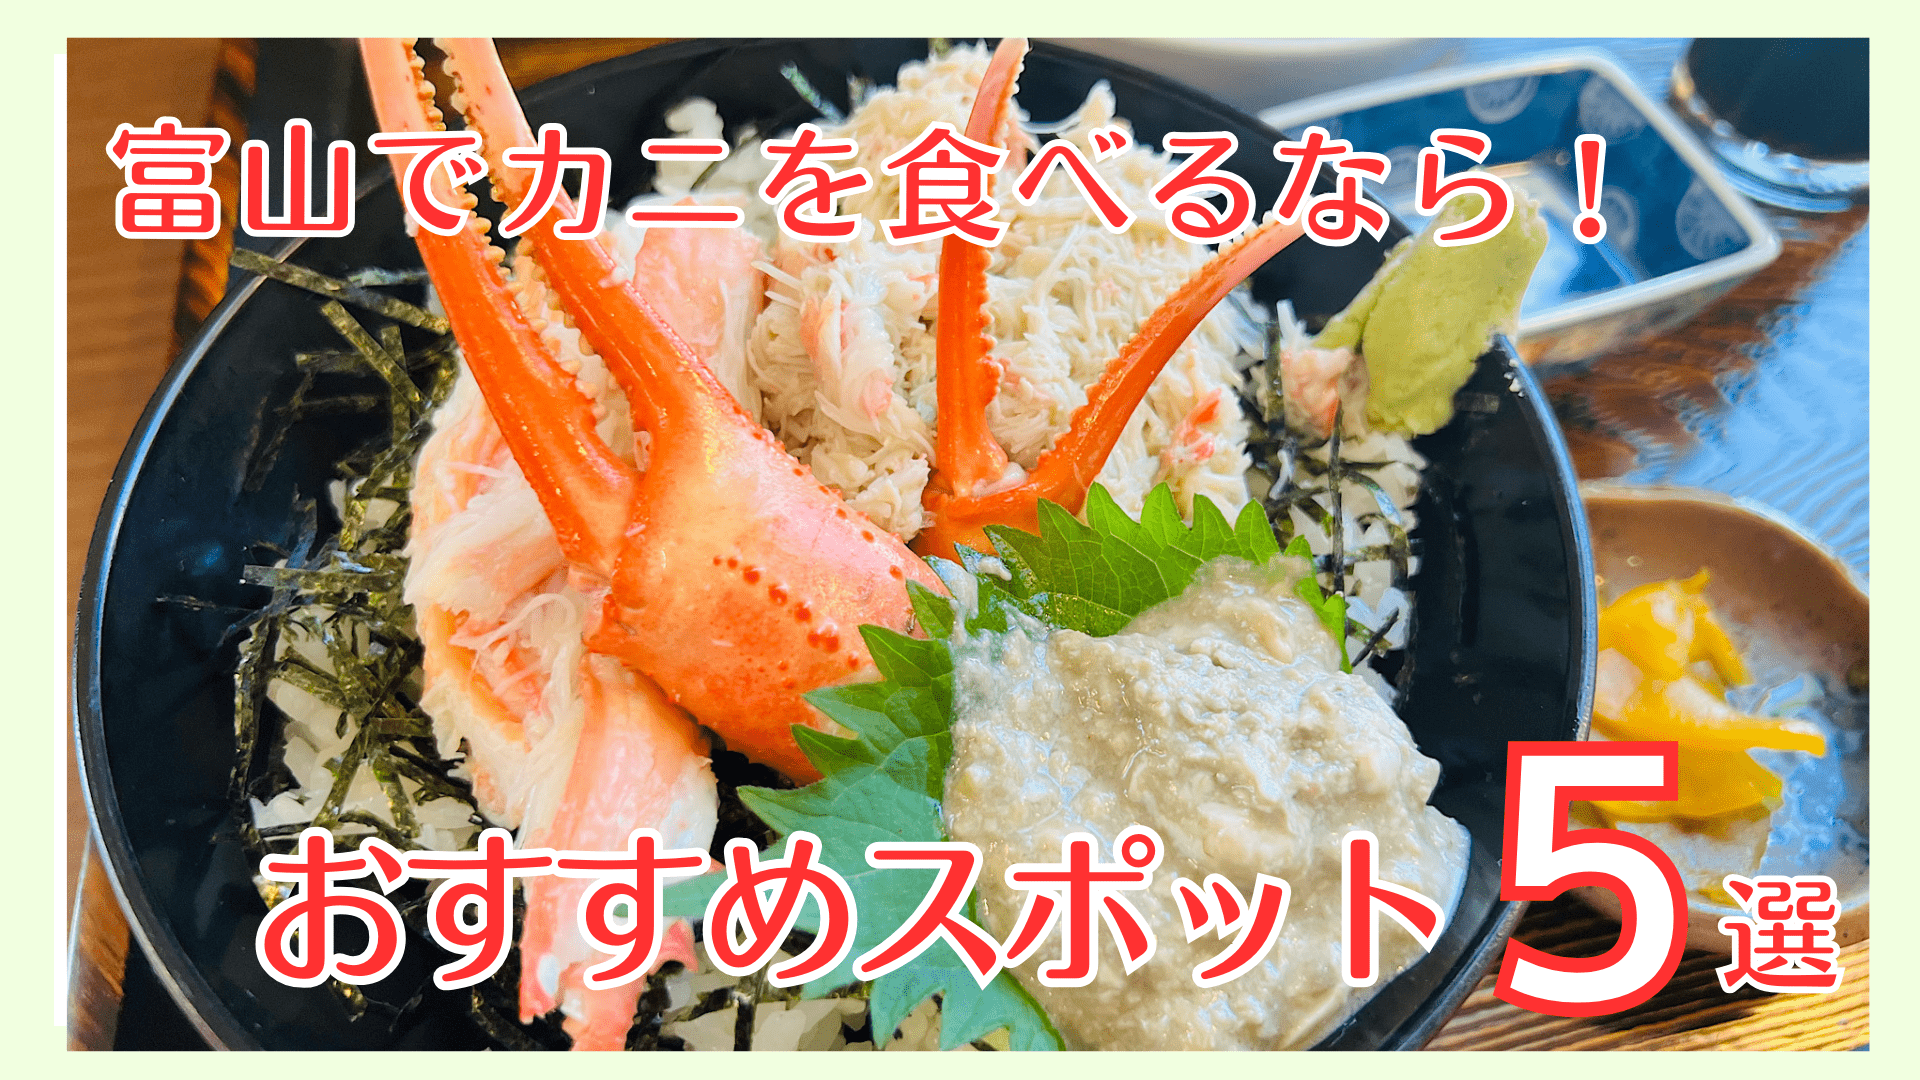 【富山でカニを食べるなら】お手頃ランチからオトクな食べ放題までーーオススメのカニスポットまとめ